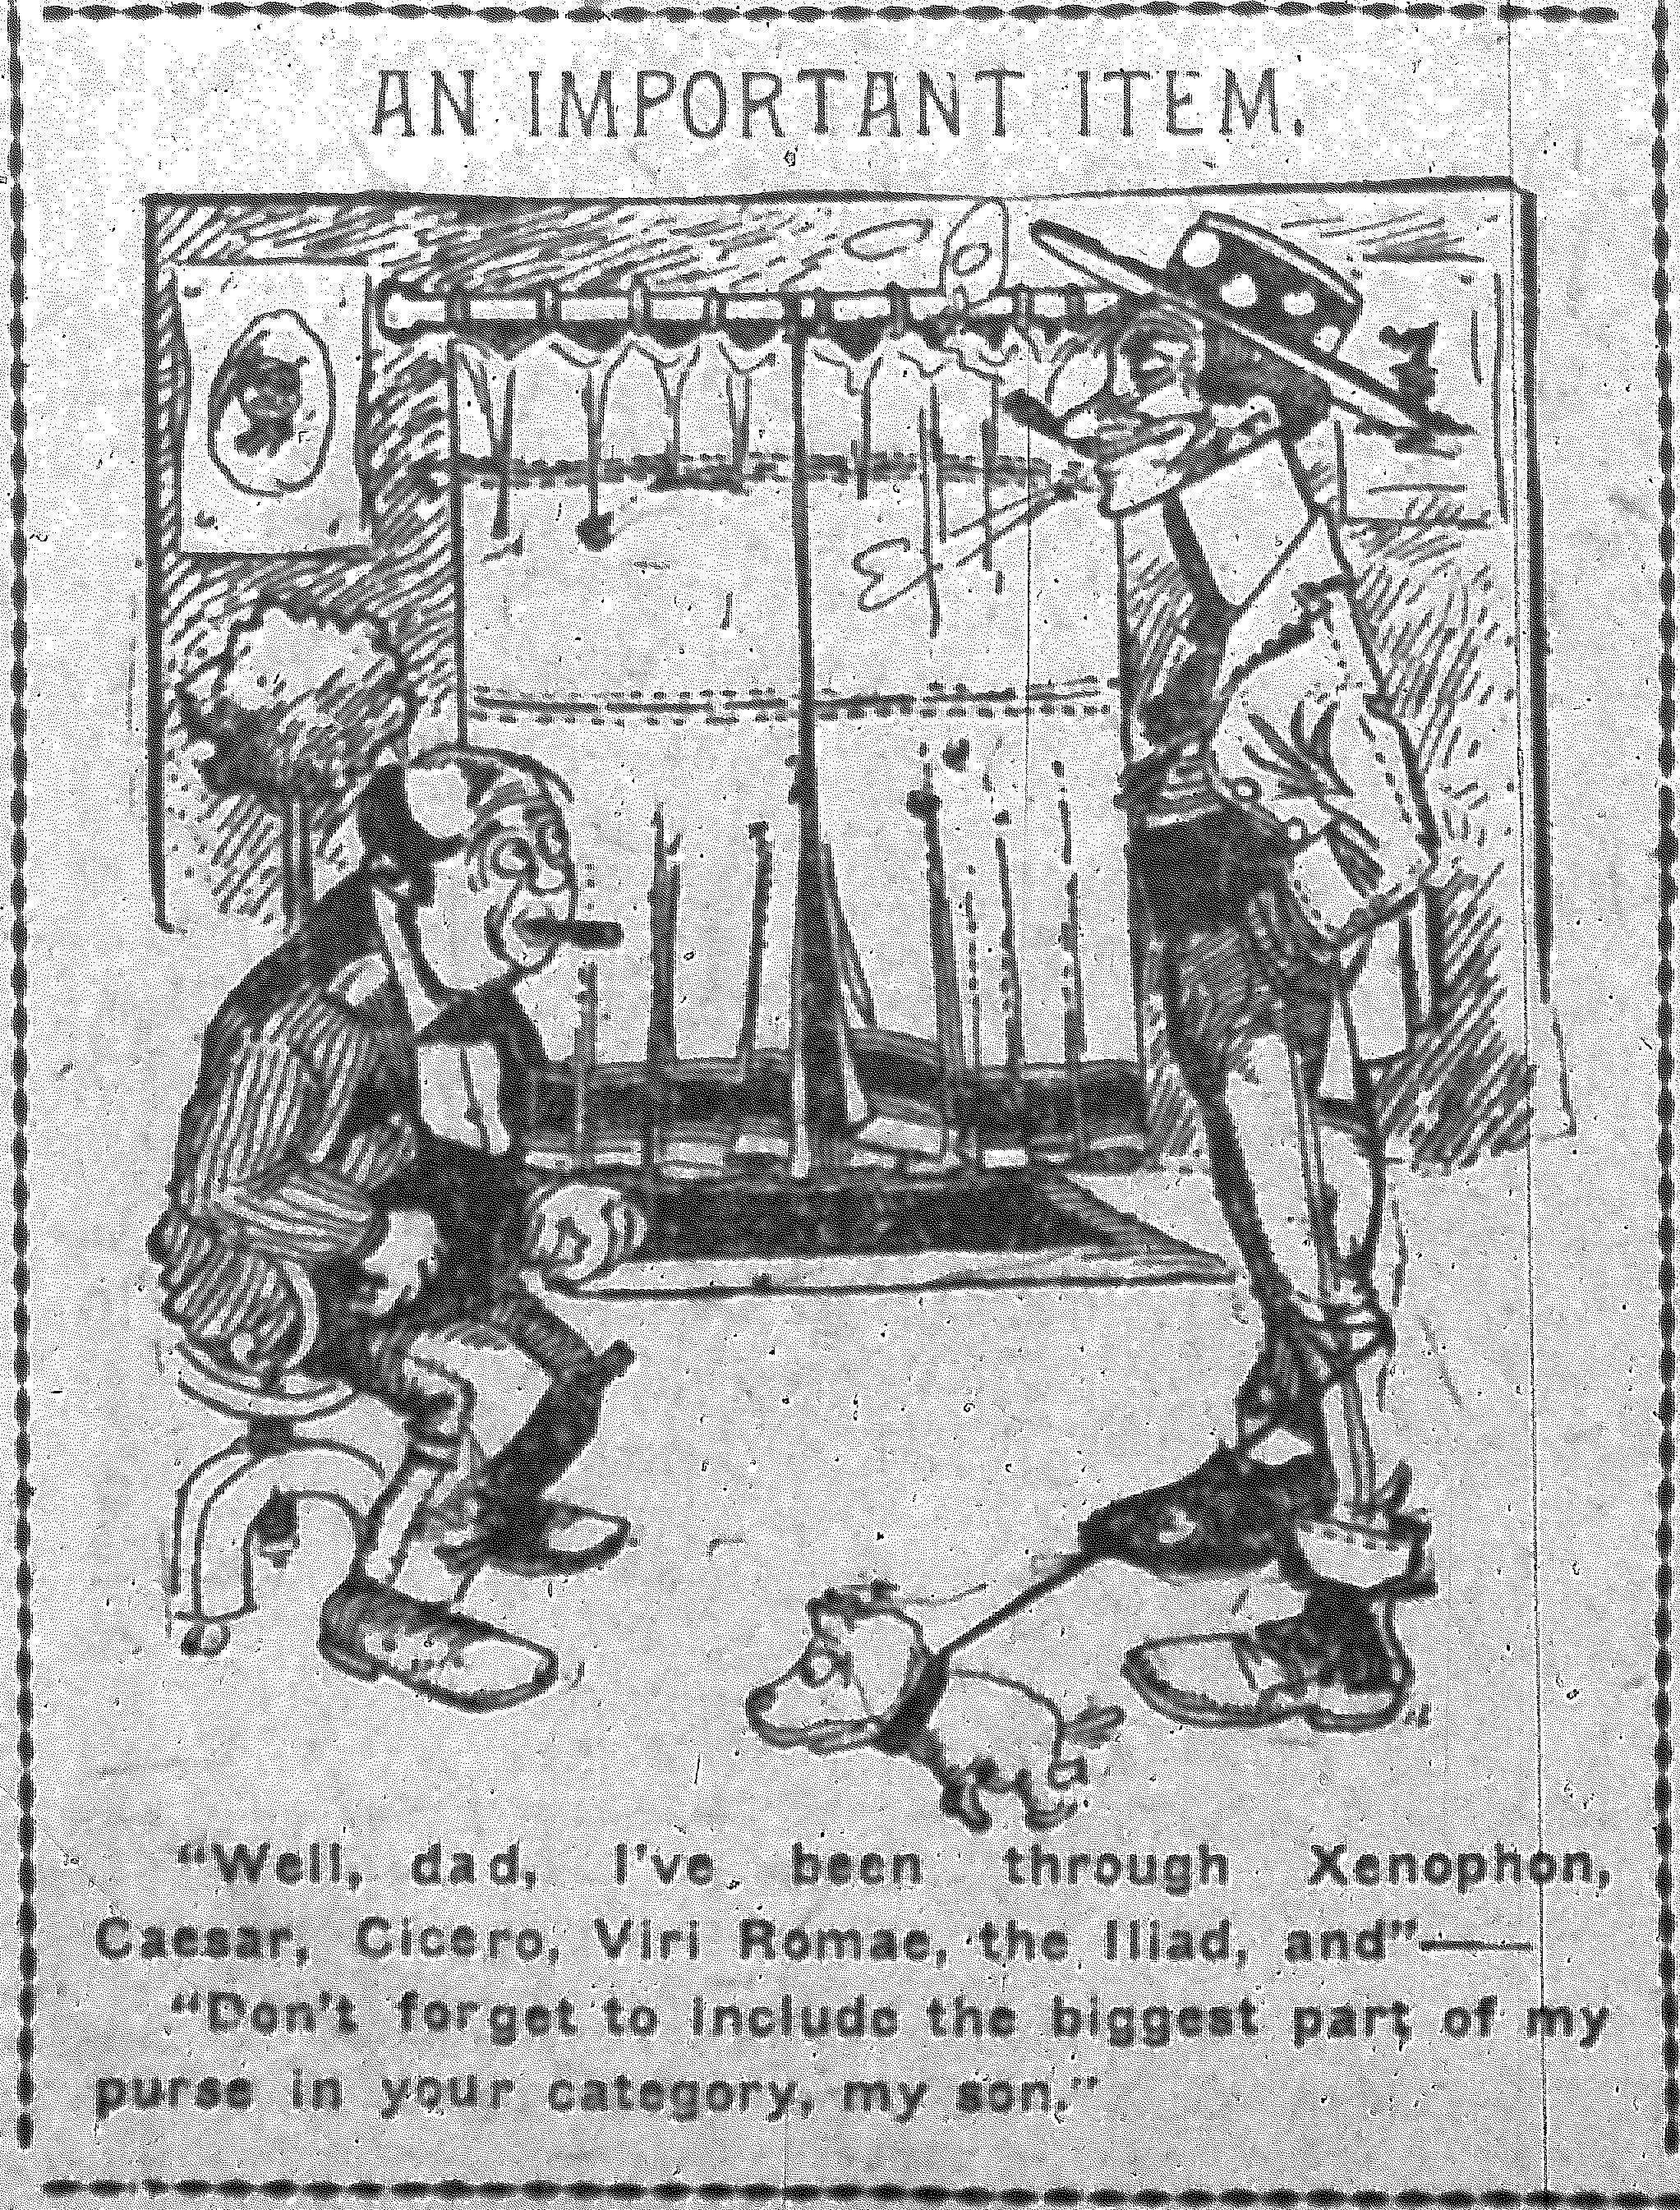 04-nyej-04-16-1901-herriman-cartoon.jpg